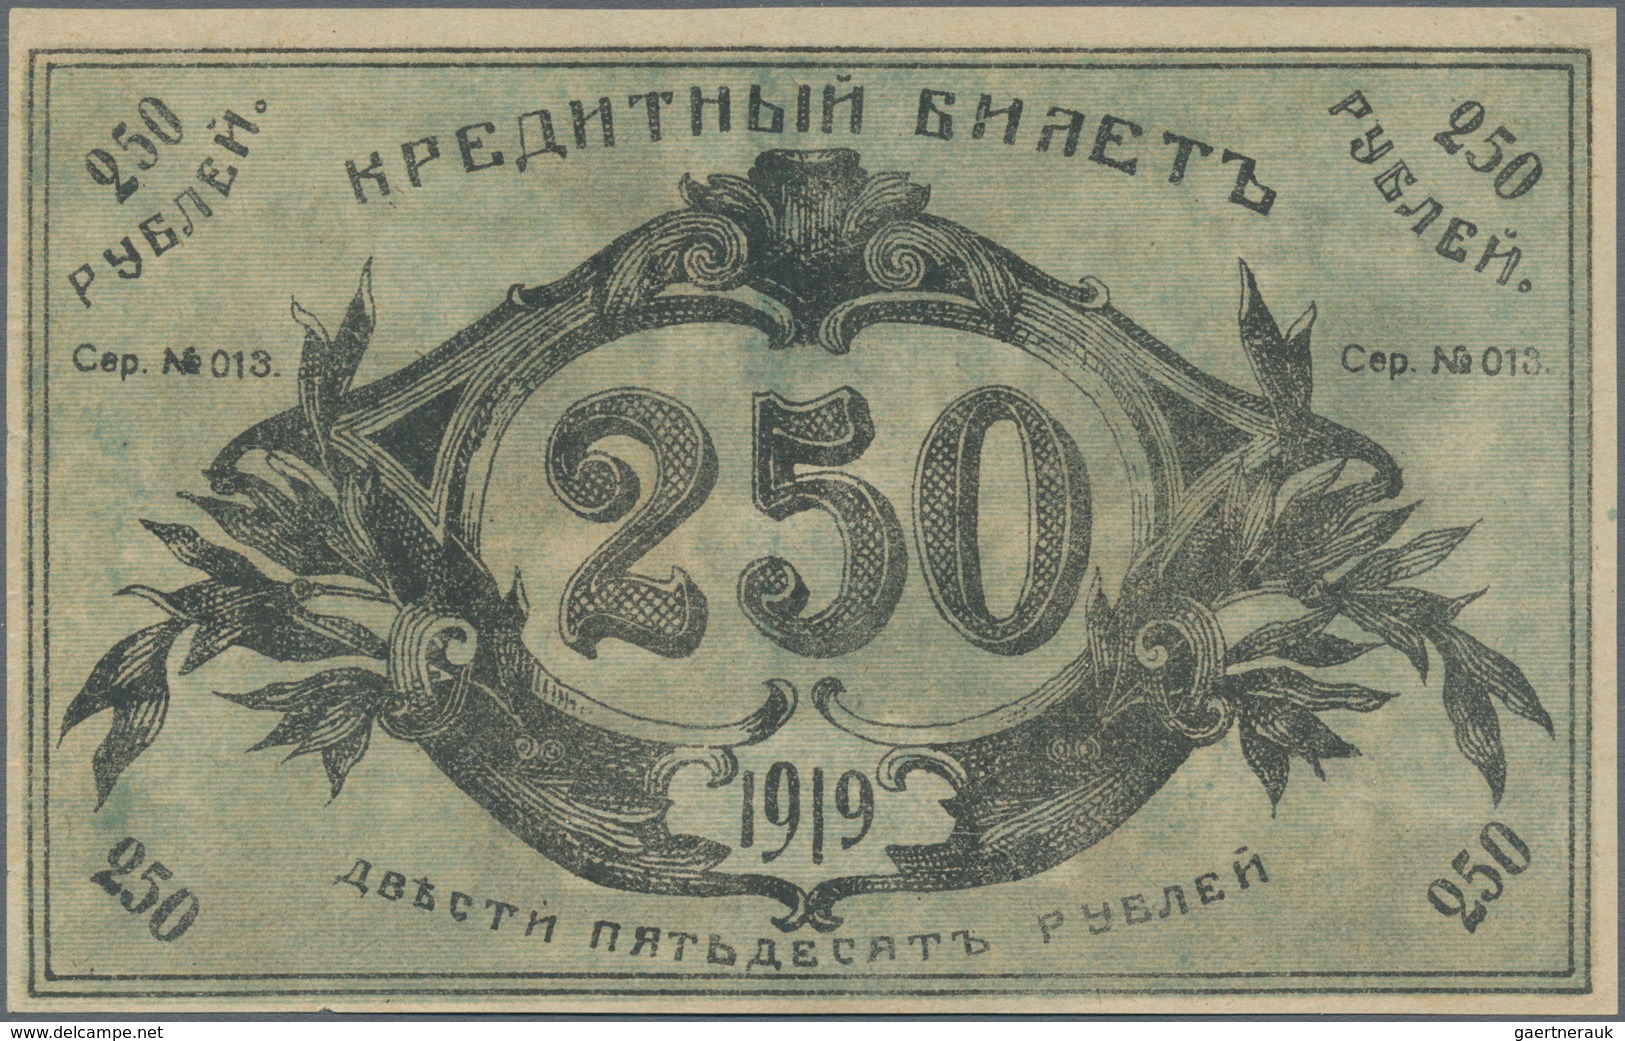 Russia / Russland: Central Asia - Semireche Region 250 Rubles 1919, P.S1132b (R. 20617, K. 19d), Con - Russia